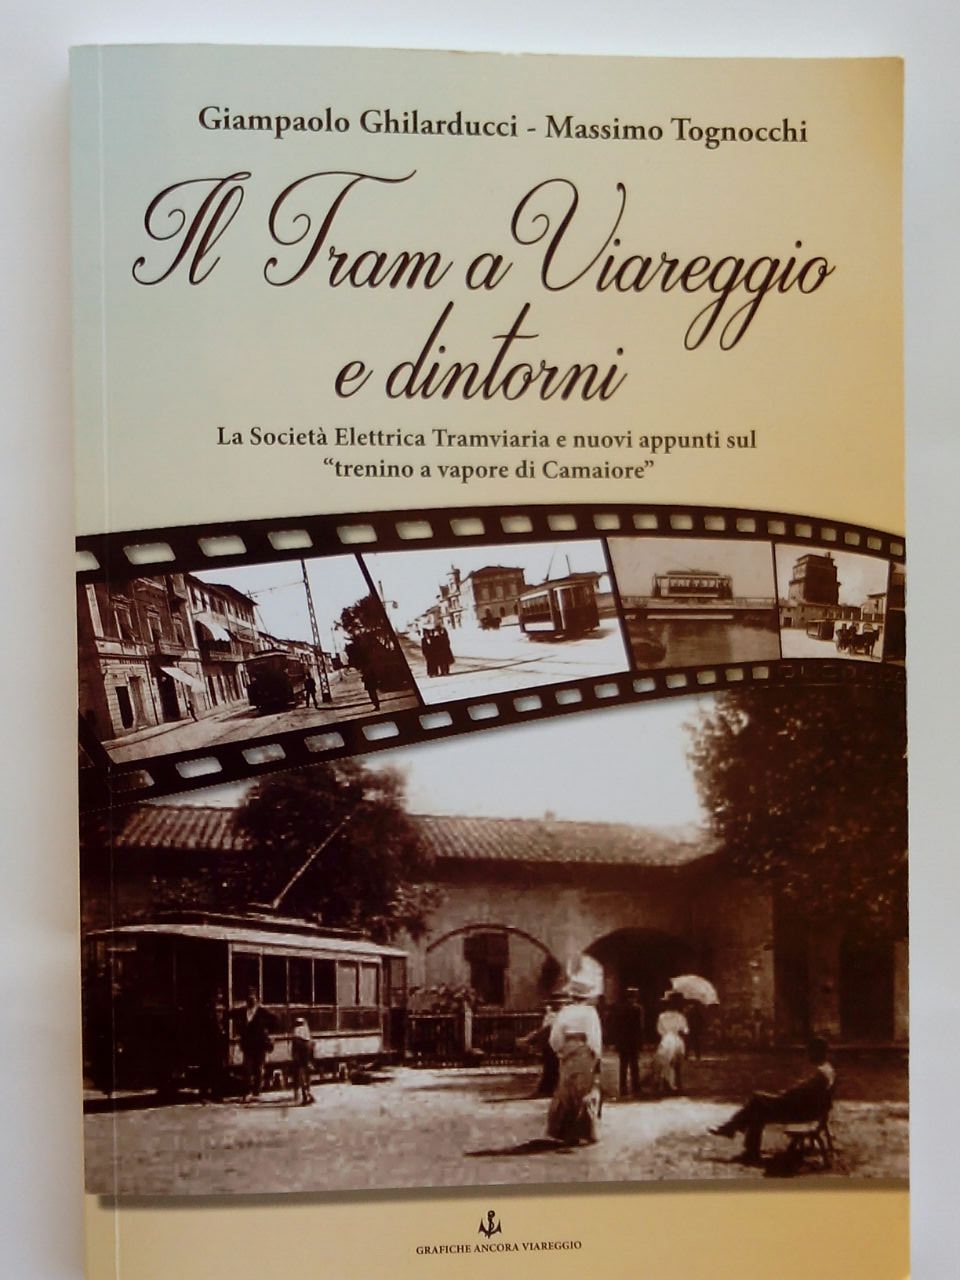 Successo per la presentazione del libro “Il tram a Viareggio”